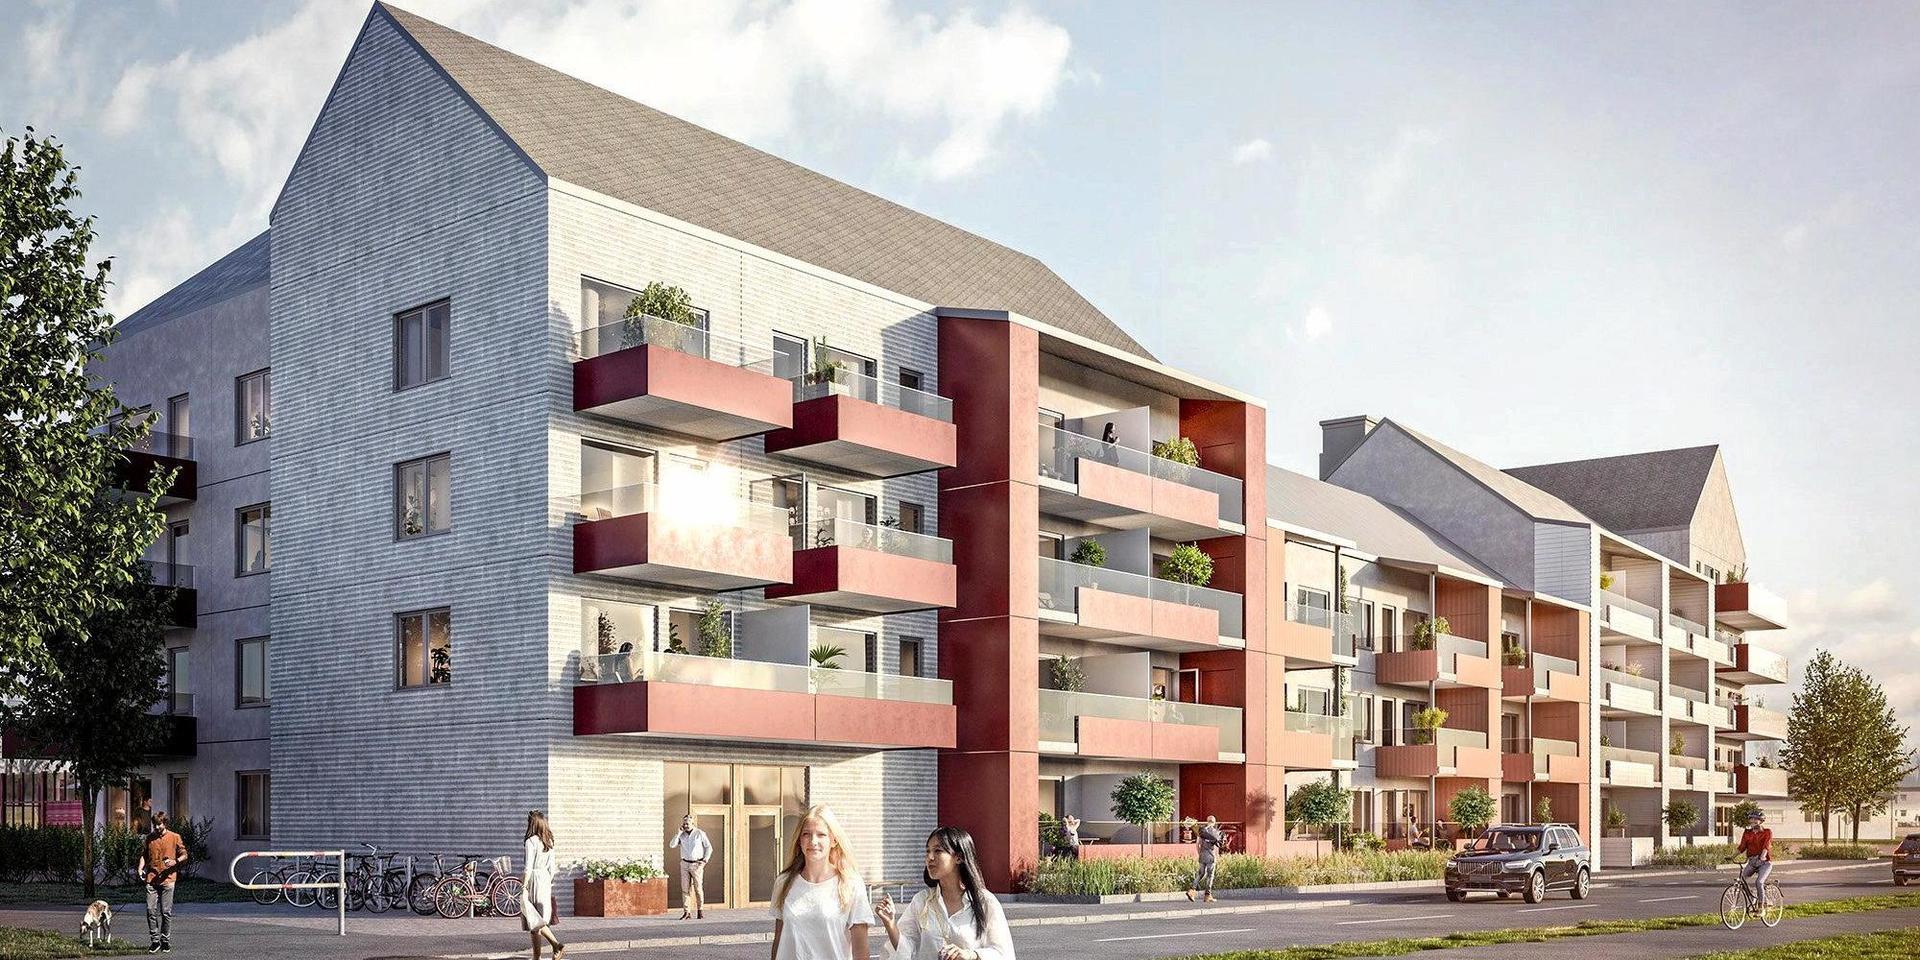 55 lägenheter i Bostadsrättsföreningen Bjelkes är ett av alla bostadsprojekt som är på gång i Vårgårda. Signaturen ”Frågande” undrar om den kommunala servicen klarar av att hantera befolkningsökningen.